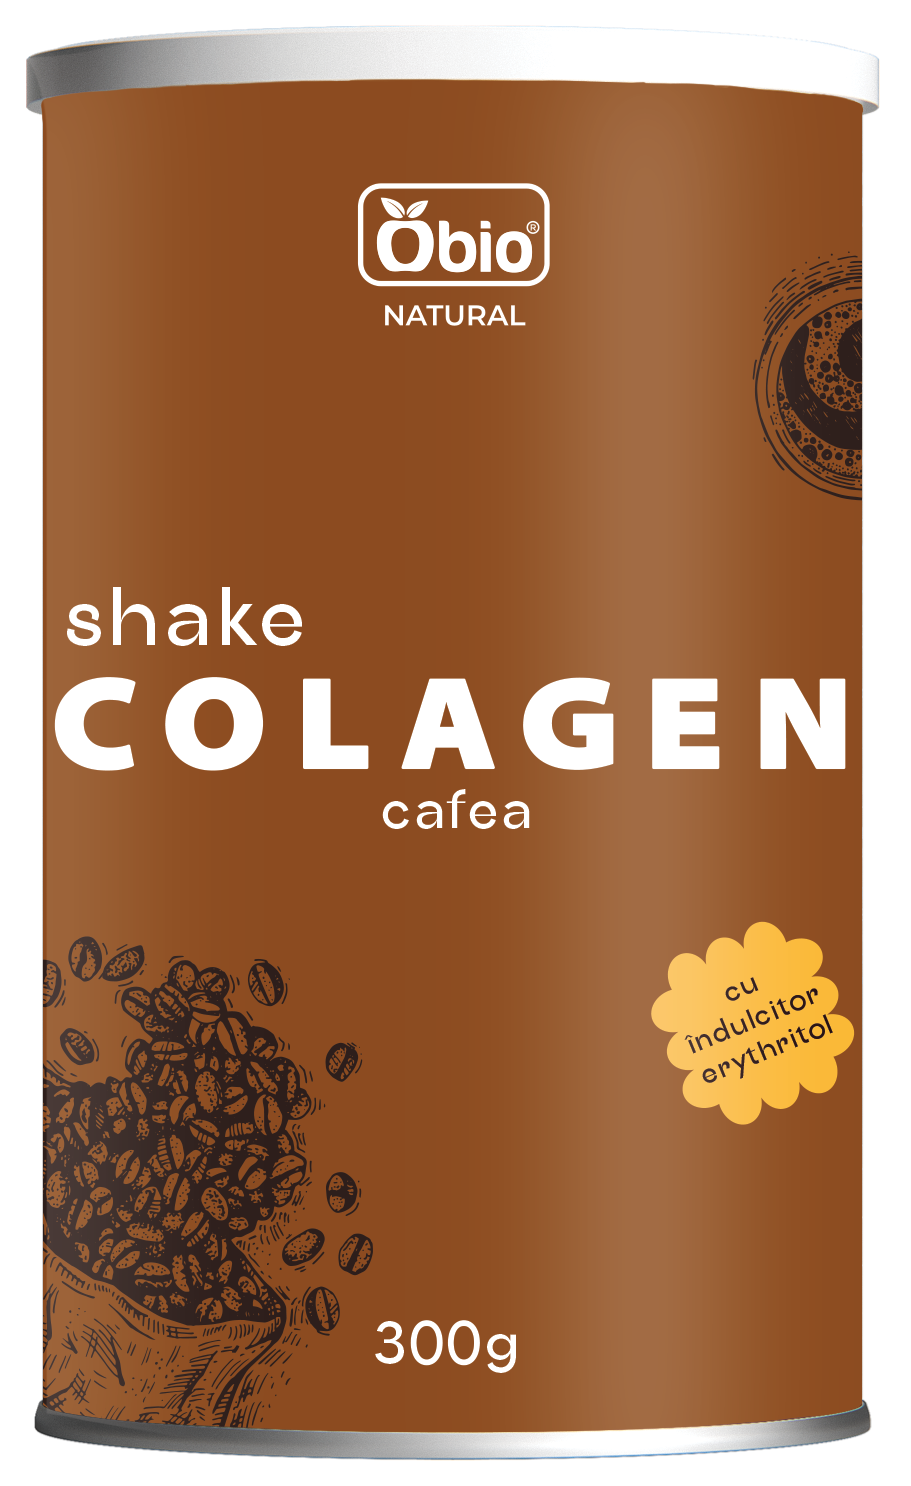 <h2>Colagen shake cu cafea 300g, Obio</h2><h3>-cu indulcitor erythritol si cu mix de 7 ciuperci-</h3><p>Colagenul mai este denumit si proteina tineretii. Savureaza o bautura sanatoasa cu colagen, bogata in proteine, cu gust de cafea si cu un amestec din 7 ciuperci bio sub forma de pudra, indulcit cu erythritol.</p><p><strong>Ingrediente:</strong> peptide active de colagen bovin (colagen tip 1) 57%, indulcitor: erythritol, cafea solubila 10%, mix bio de ciuperci pudra: reishi, chaga, shiitake, maitake, coama leului, cordyceps, ciuperca alba (tremella), maca pudra, scortisoara pudra.</p><p><strong>Mod de preparare:</strong> amestecati 2-3 linguri de produs (aprox. 30g) cu 250ml apa sau lapte. Se poate servi cald sau rece.</p><p>Alergeni: poate contine urme de nuci, gluten. Contine cofeina.</p><p><strong>Valori nutritionale/100g:<br /></strong>Energie: 1020 kJ / 244 kcal<br />Grasimi: 0,2 g din care acizi grasi saturati 0,1 g<br />Glucide: 25 g din care zaharuri 1,2 g<br />Fibre alimentare: 4,3 g<br />Proteine: 53 g<br />Sare: 0,1 g</p><p>A se pastra in loc uscat si racoros. Dupa fiecare folosire, asigurati-va ca ati pus capacul la loc in mod corect pentru o buna etanseitate.</p><p>Fabricat in Polonia</p><p>Gramaj: 300g</p>